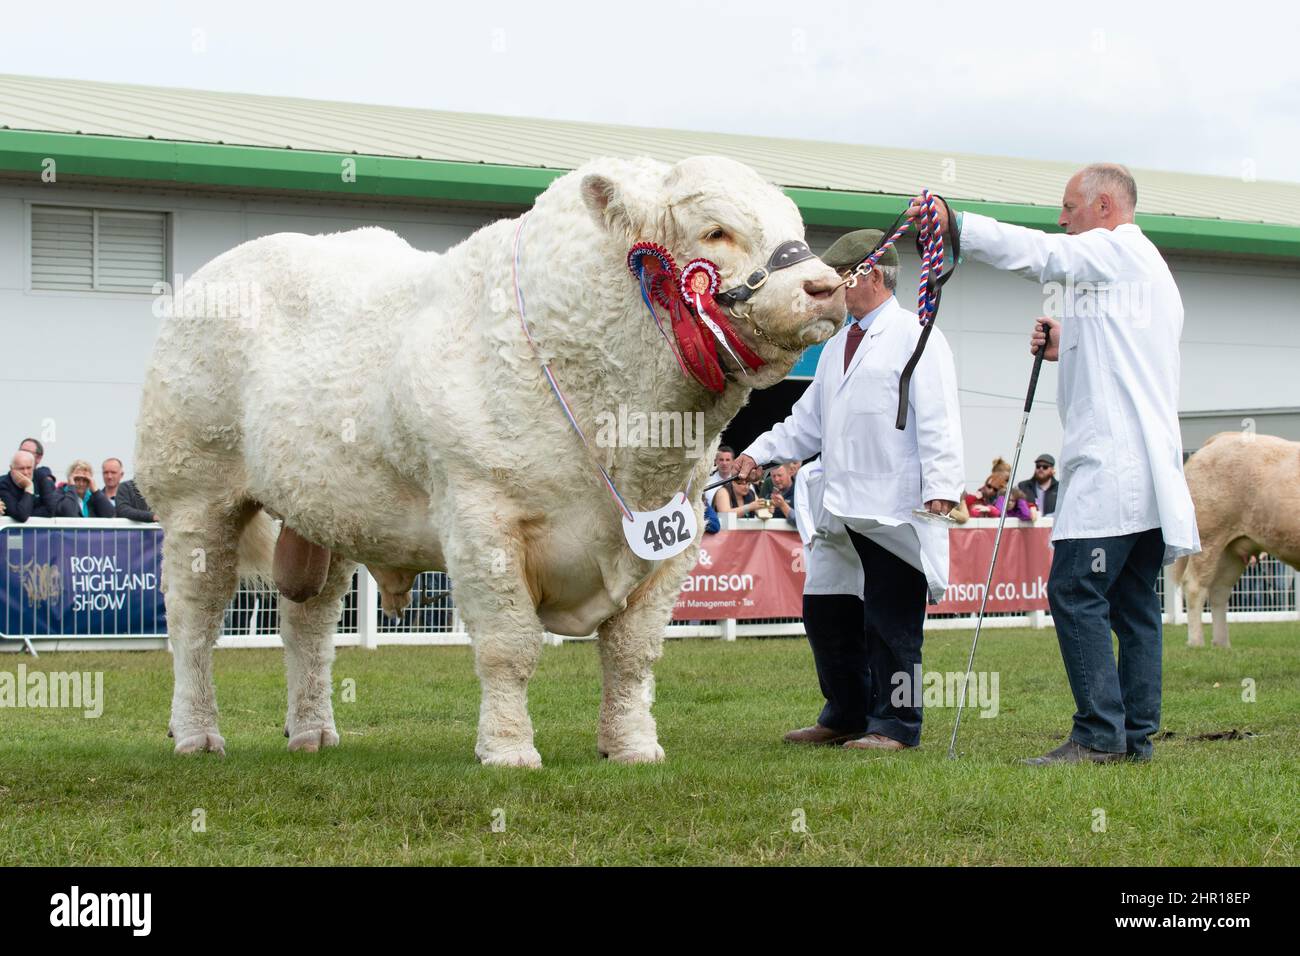 Taureau Charolais 'Harestone Jaquard' de Harestone bétail - gagnant de la réserve globale dans le bétail - Royal Highland Show, Ingliston, Écosse, Royaume-Uni Banque D'Images